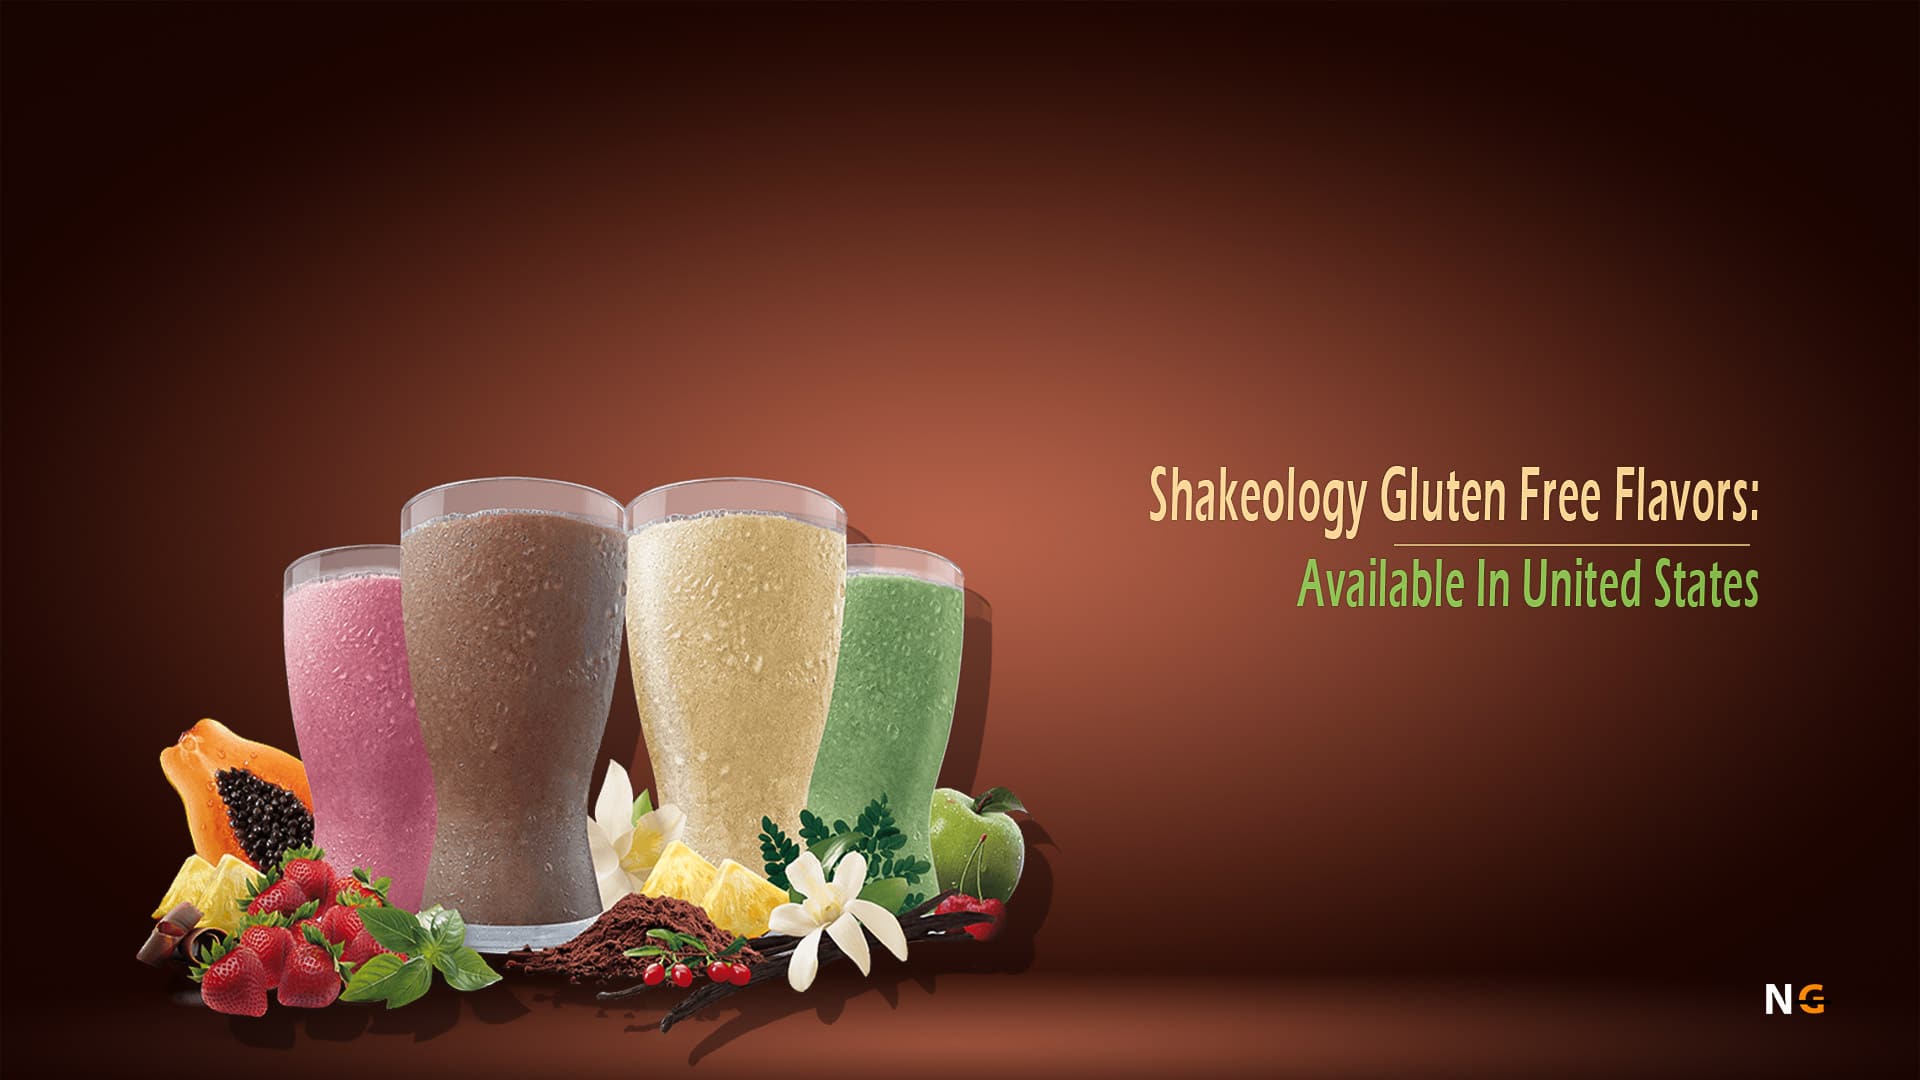 Shakeology Gluten Free Flavors